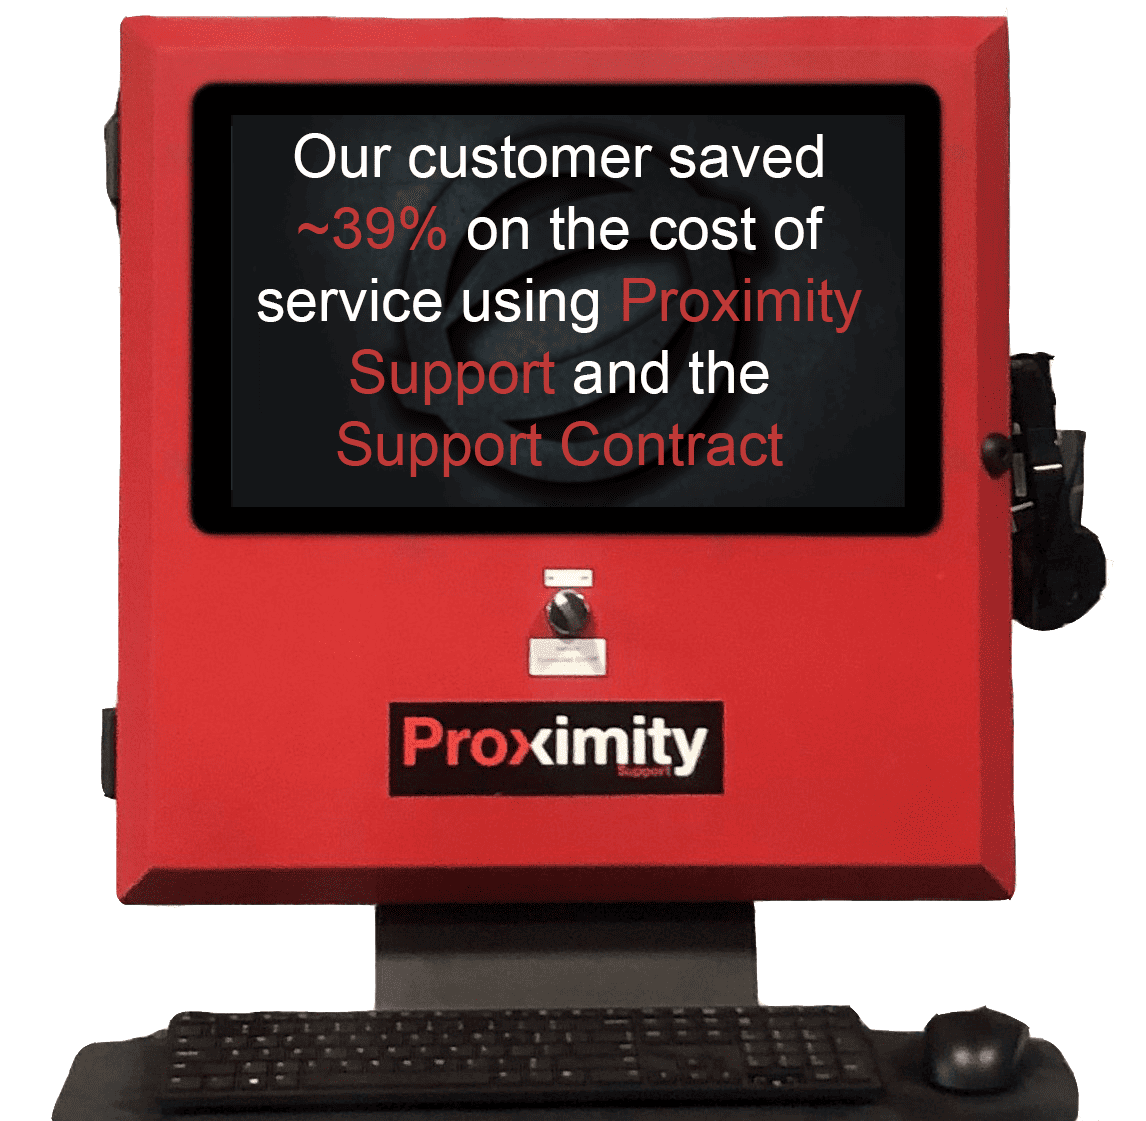 Panel de Soporte de Proximidad con texto en la pantalla que dice: &quot;Nuestro cliente ahorró ~39% en el costo del servicio usando Soporte de Proximidad y el Contrato de Soporte.&quot;